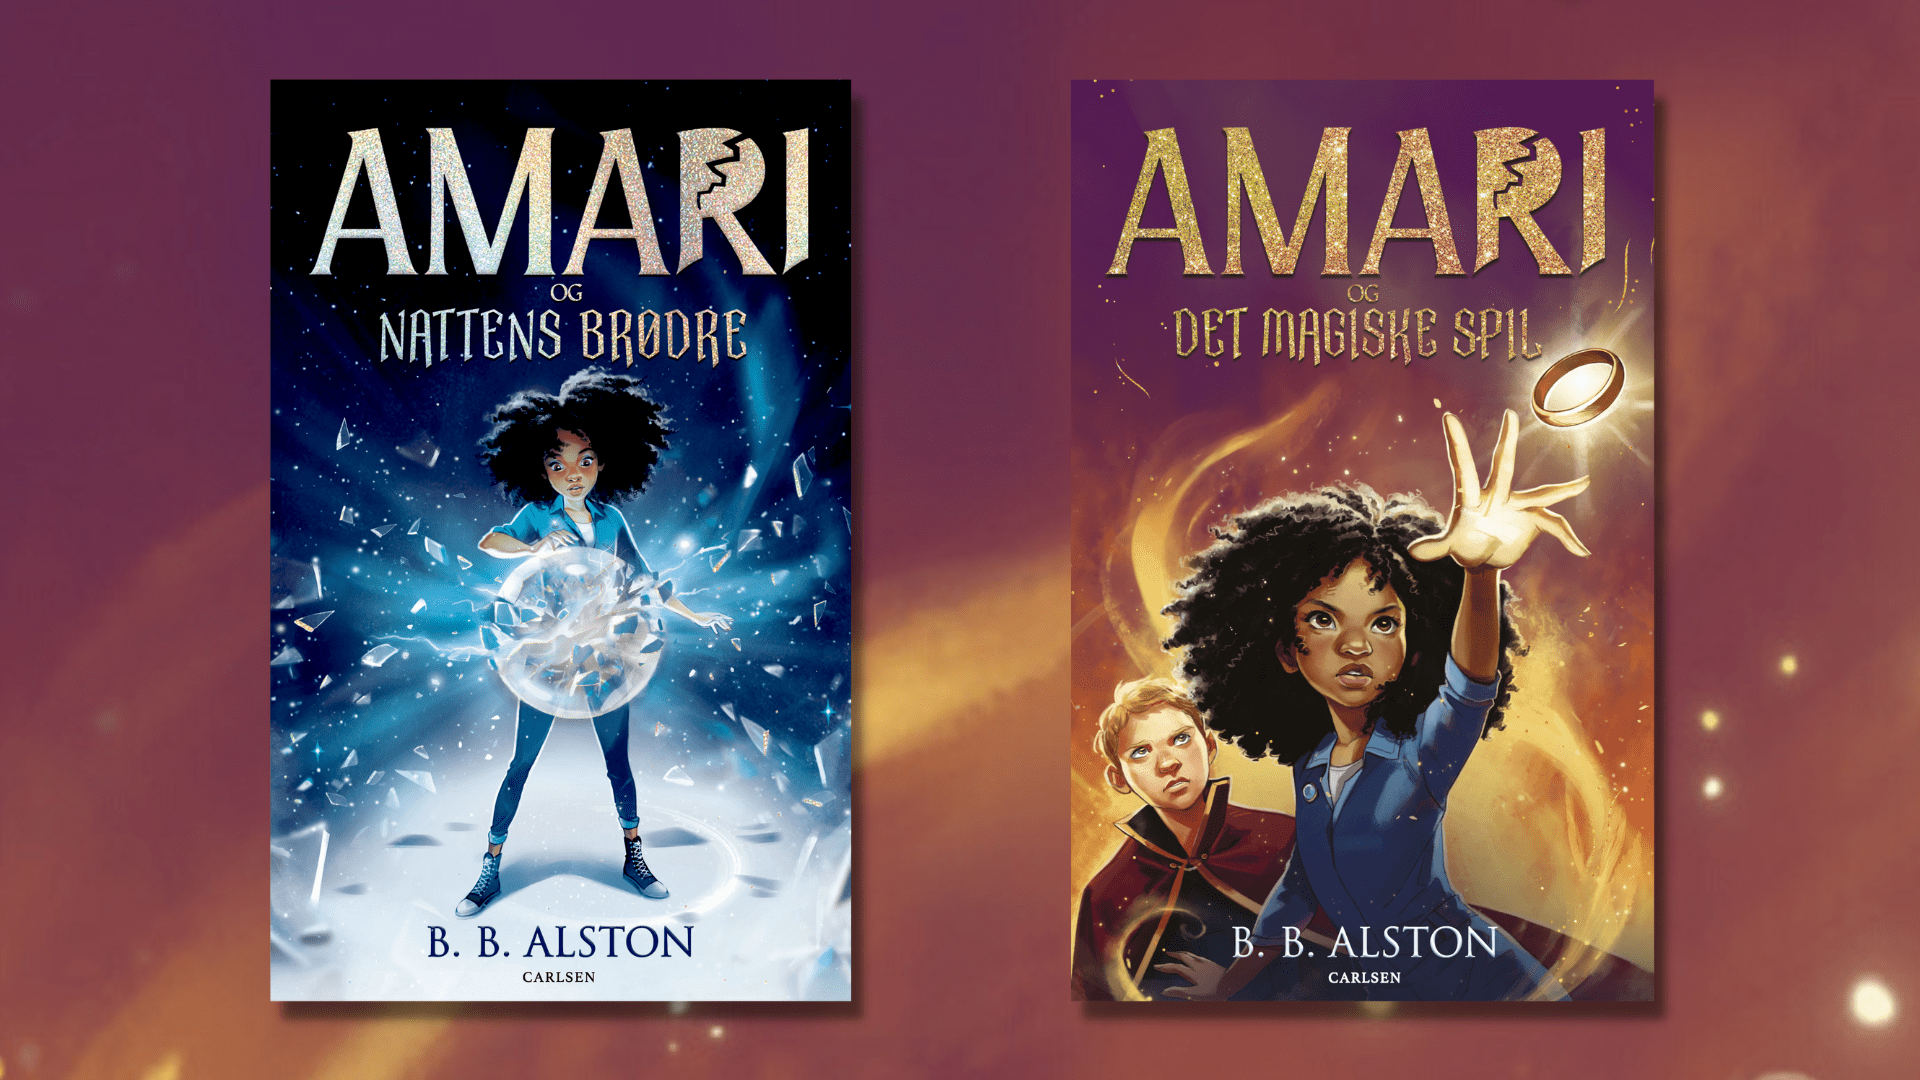 Magiske Amari vil tage verden med storm i storslået fantasy-serie